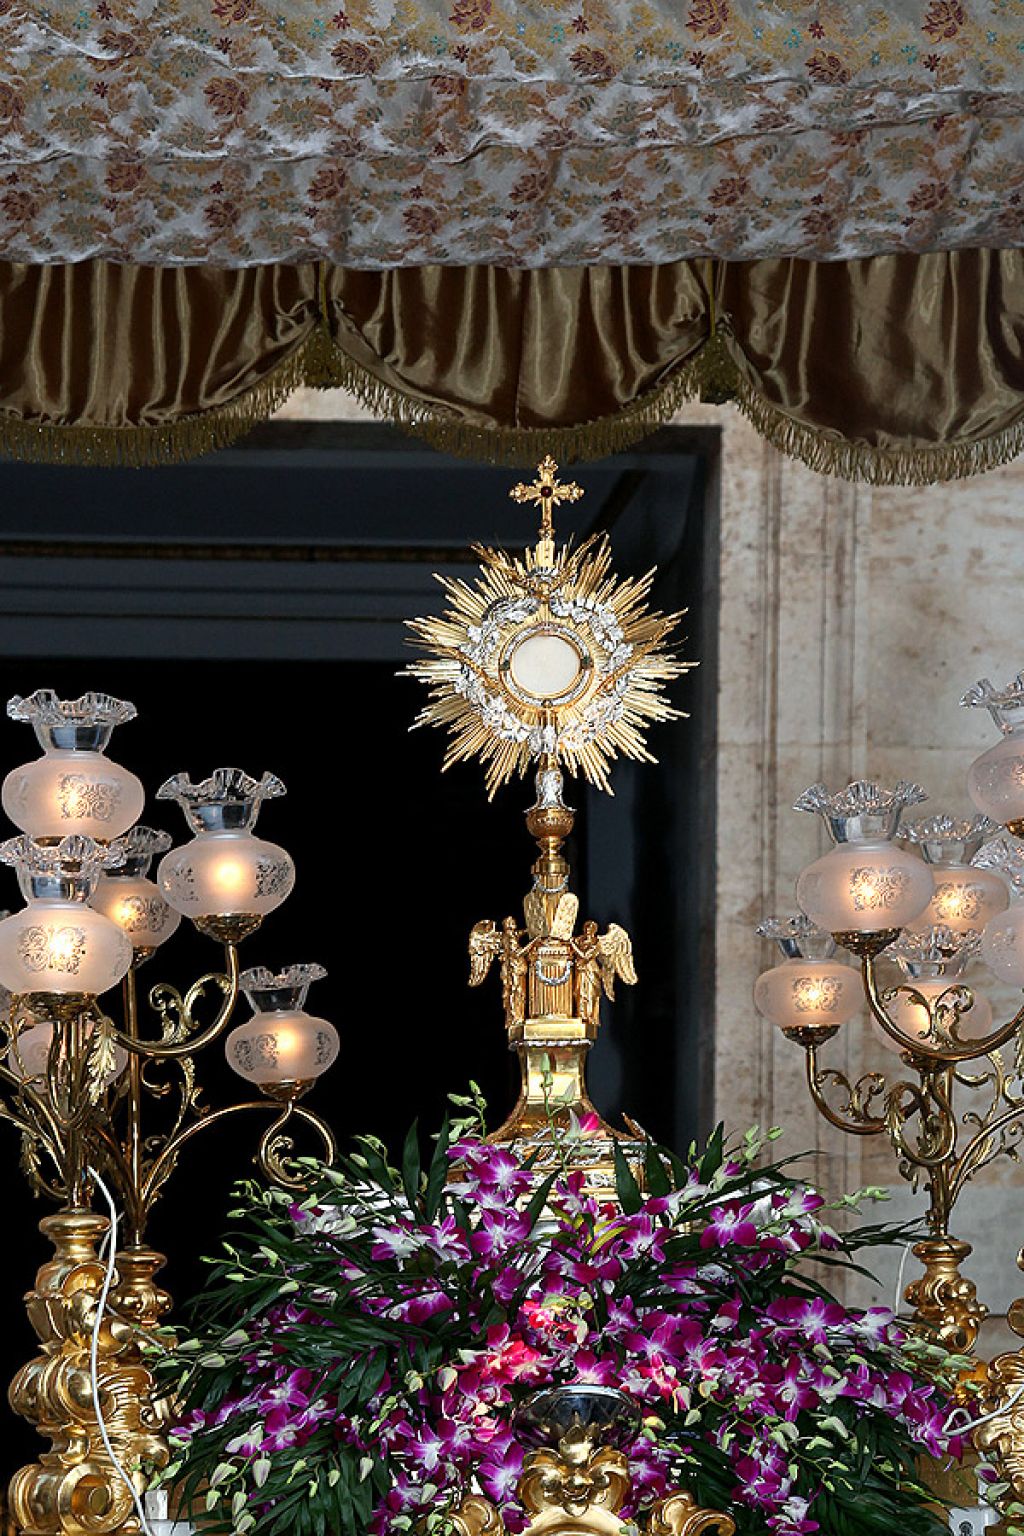   Almàssera celebra este domingo el Corpus Christi